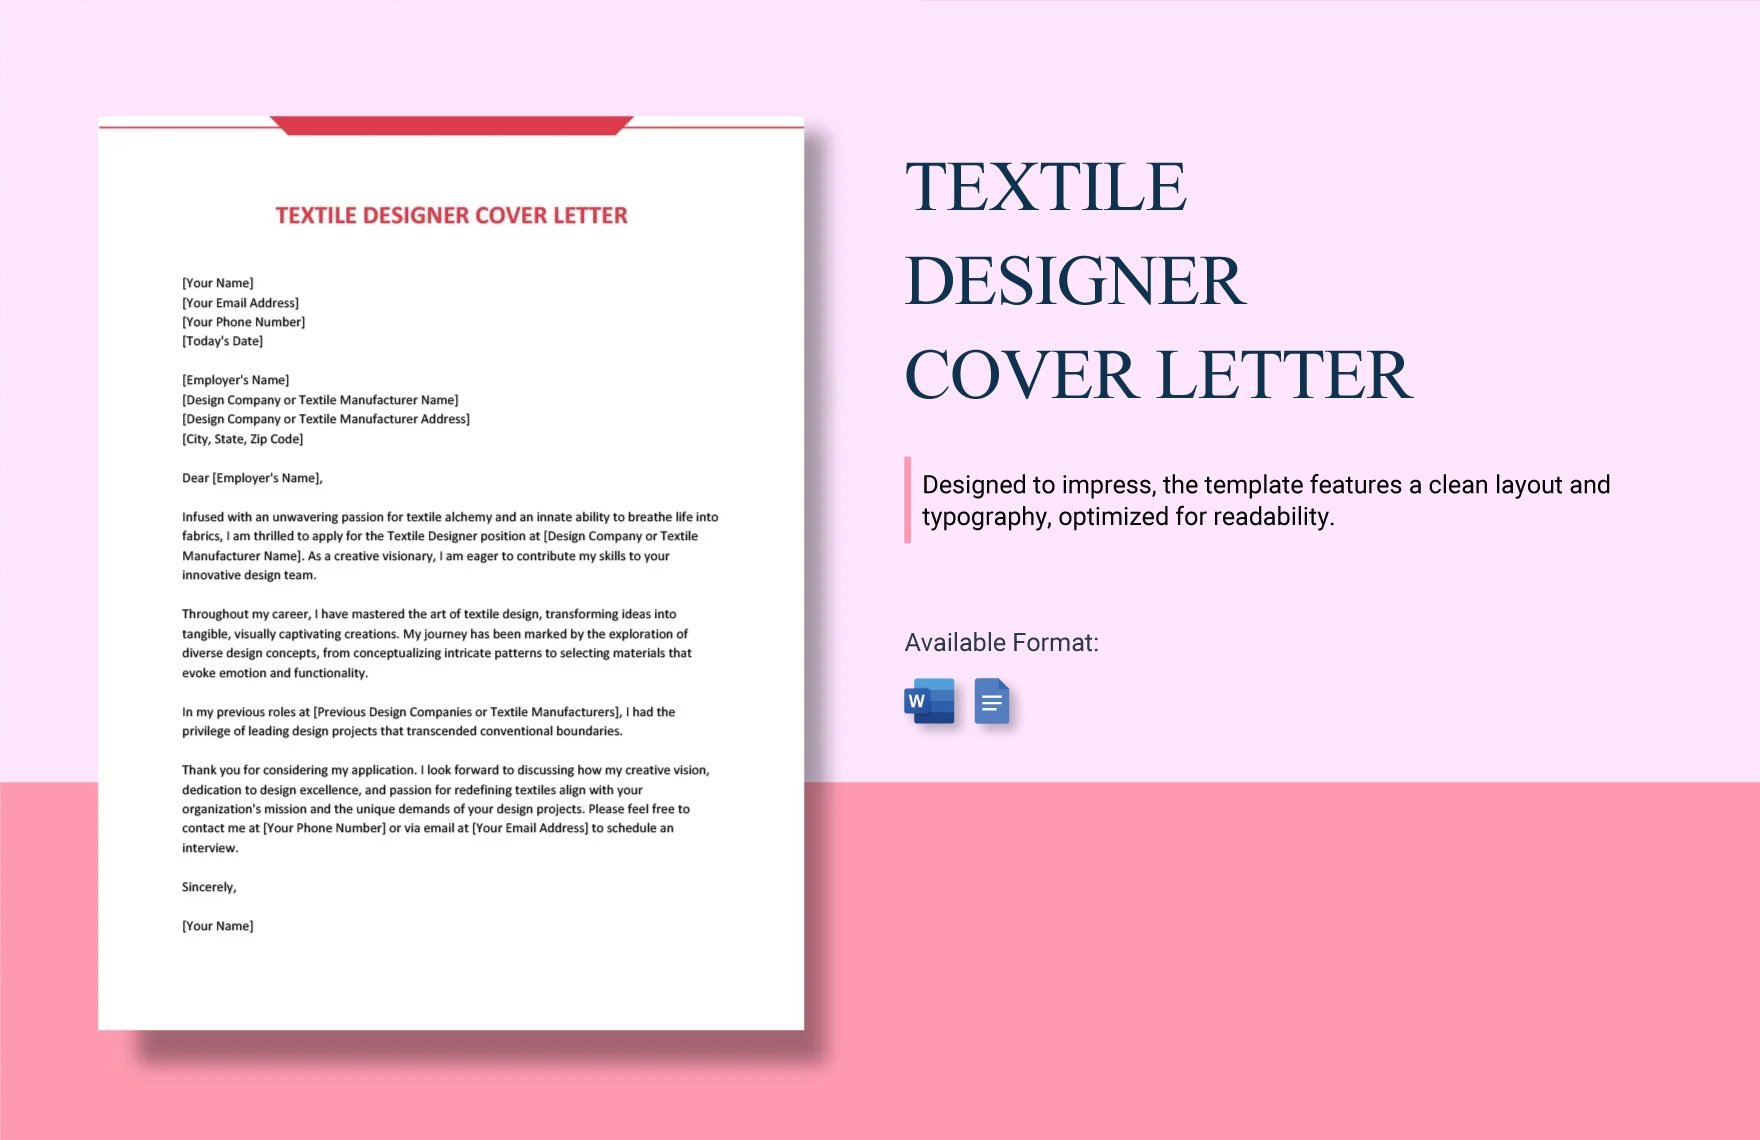 Textile Designer Cover Letter